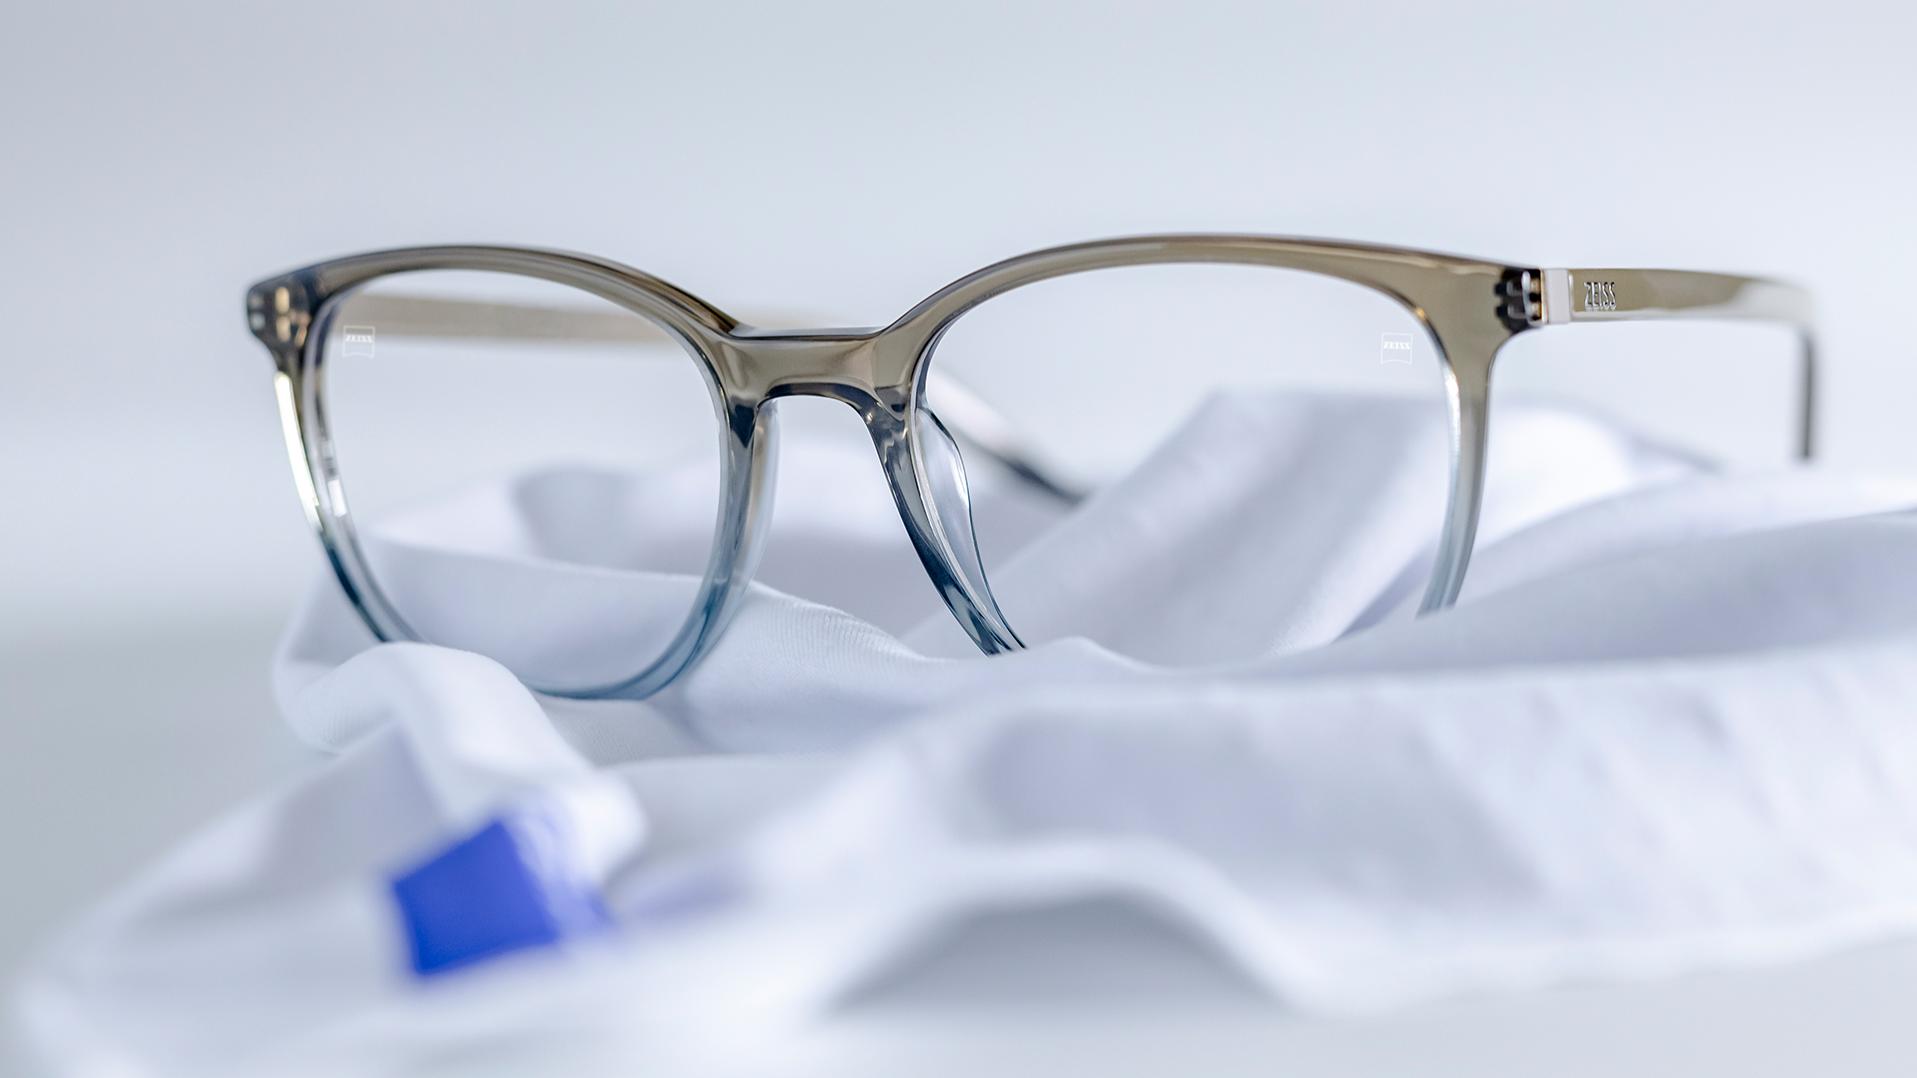 Un paio di occhiali con montatura grigio-blu e lenti ZEISS con trattamento DuraVision® posato su un panno in microfibra bianco.